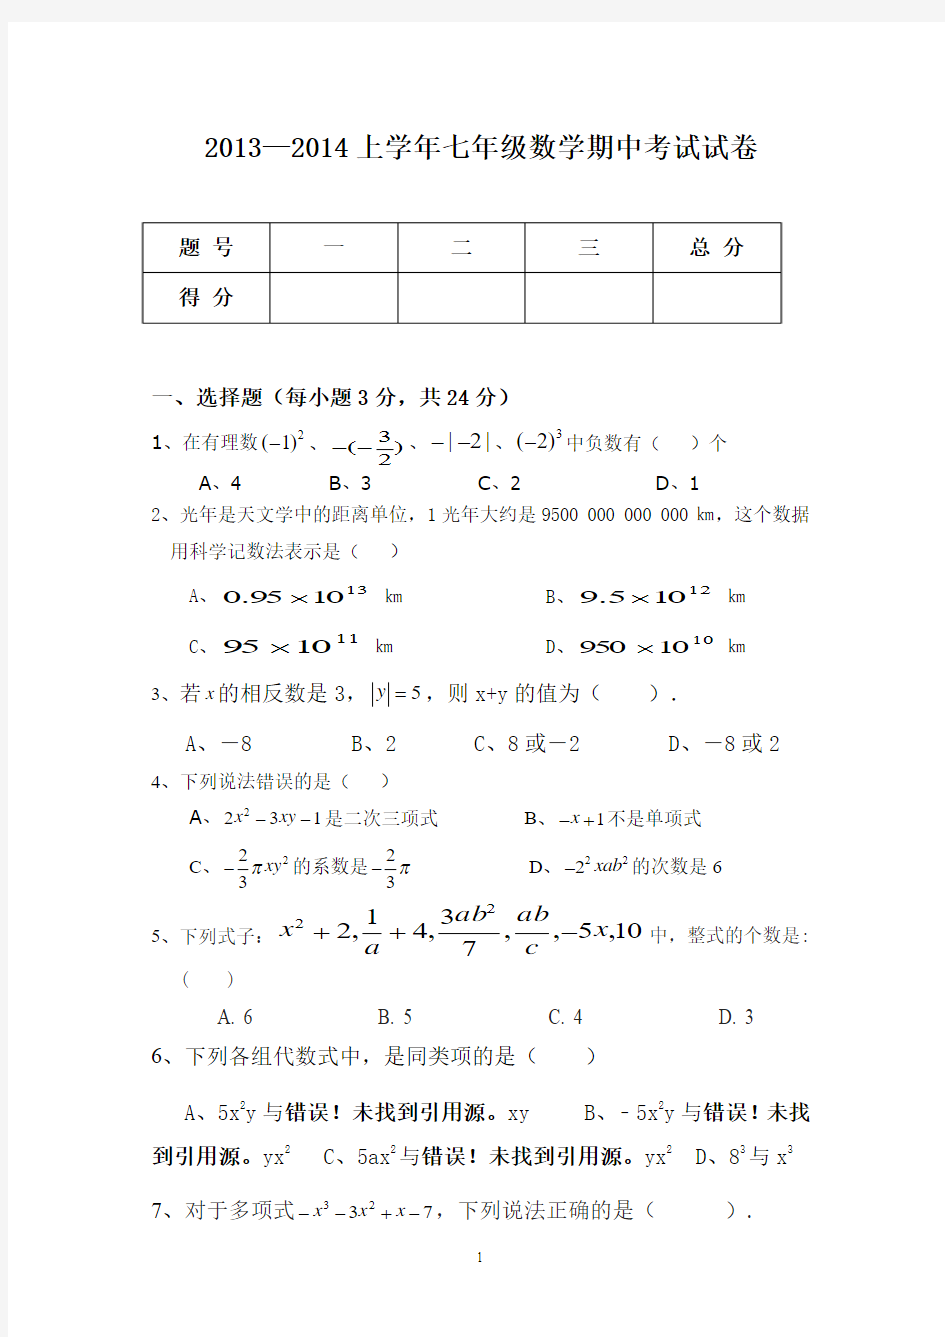 施甸县老麦中学2013-2014学年七年级上期中考试数学试题